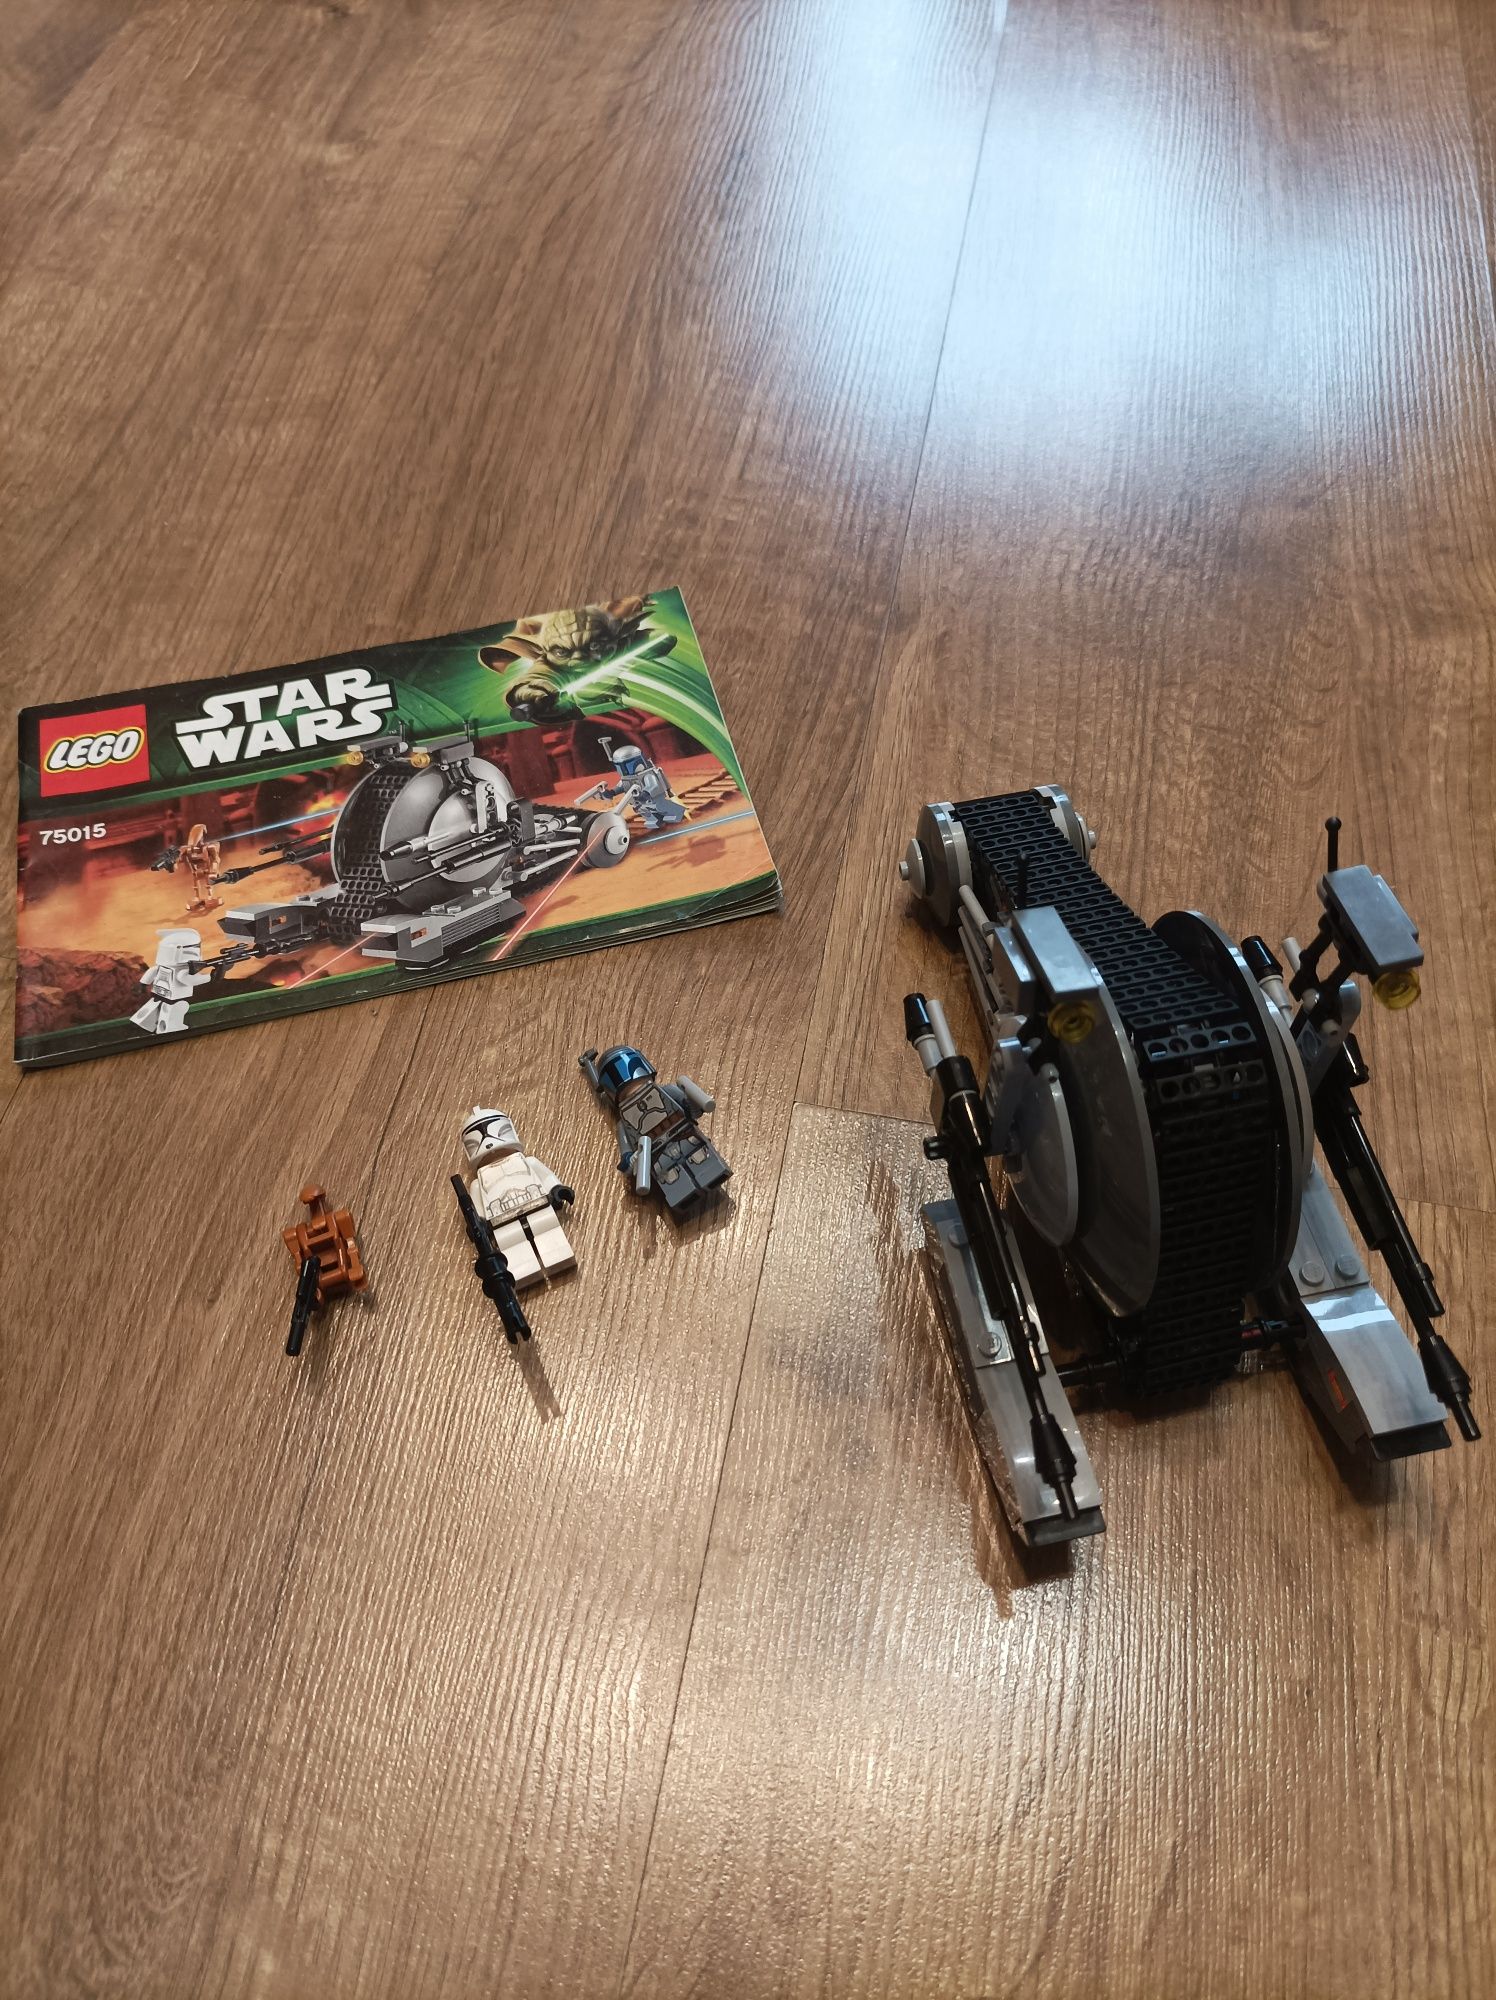 Lego 75015 Star Wars